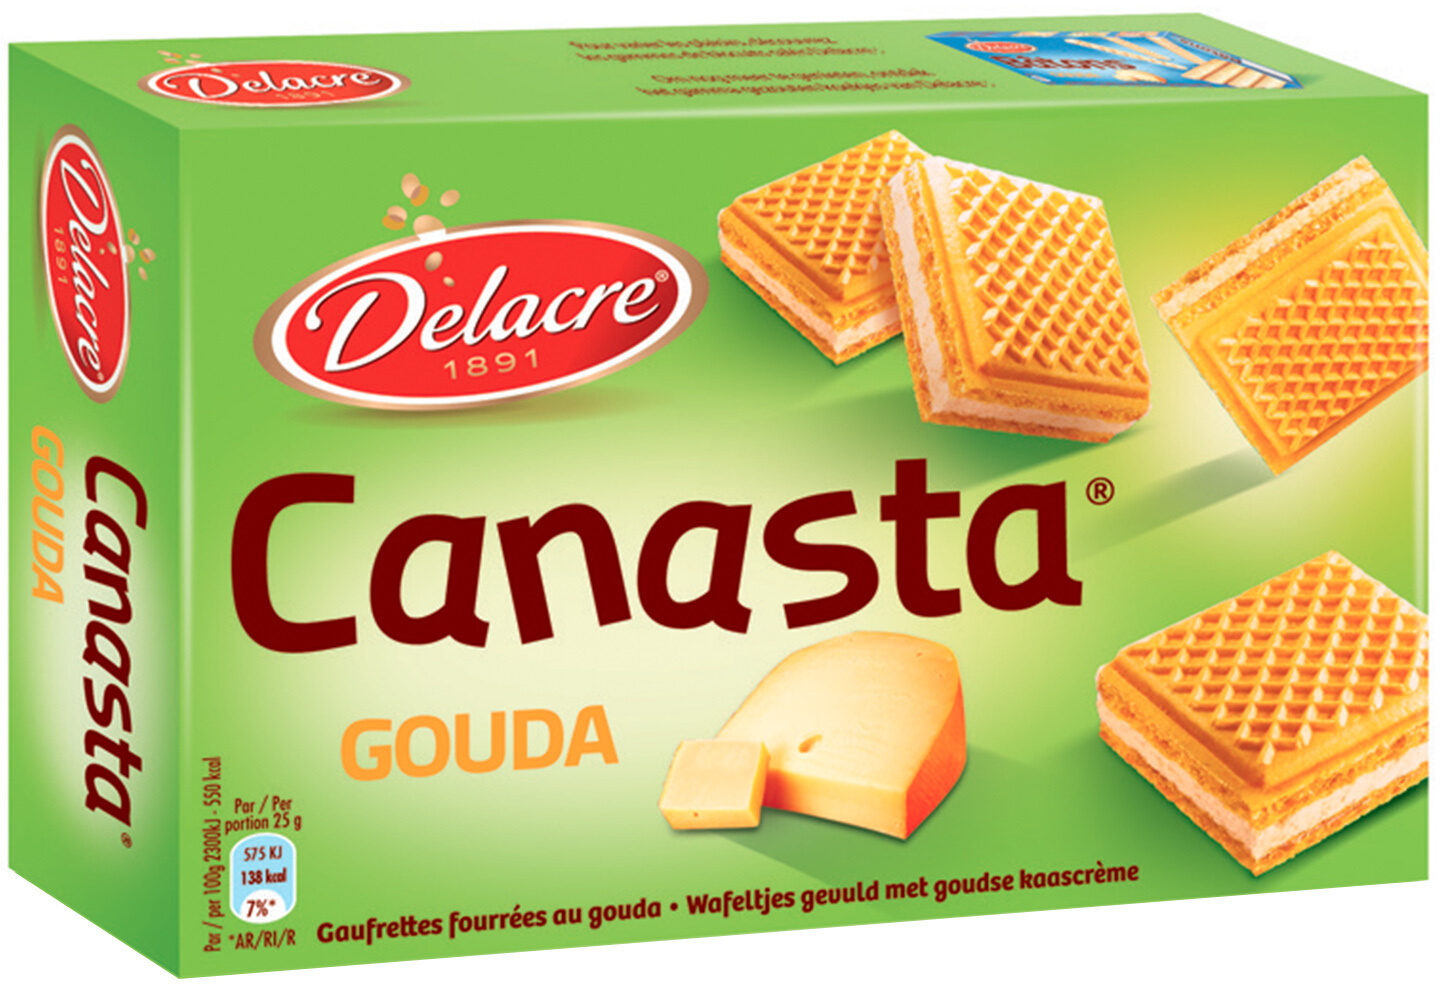 Delacre canasta gouda - Product - fr